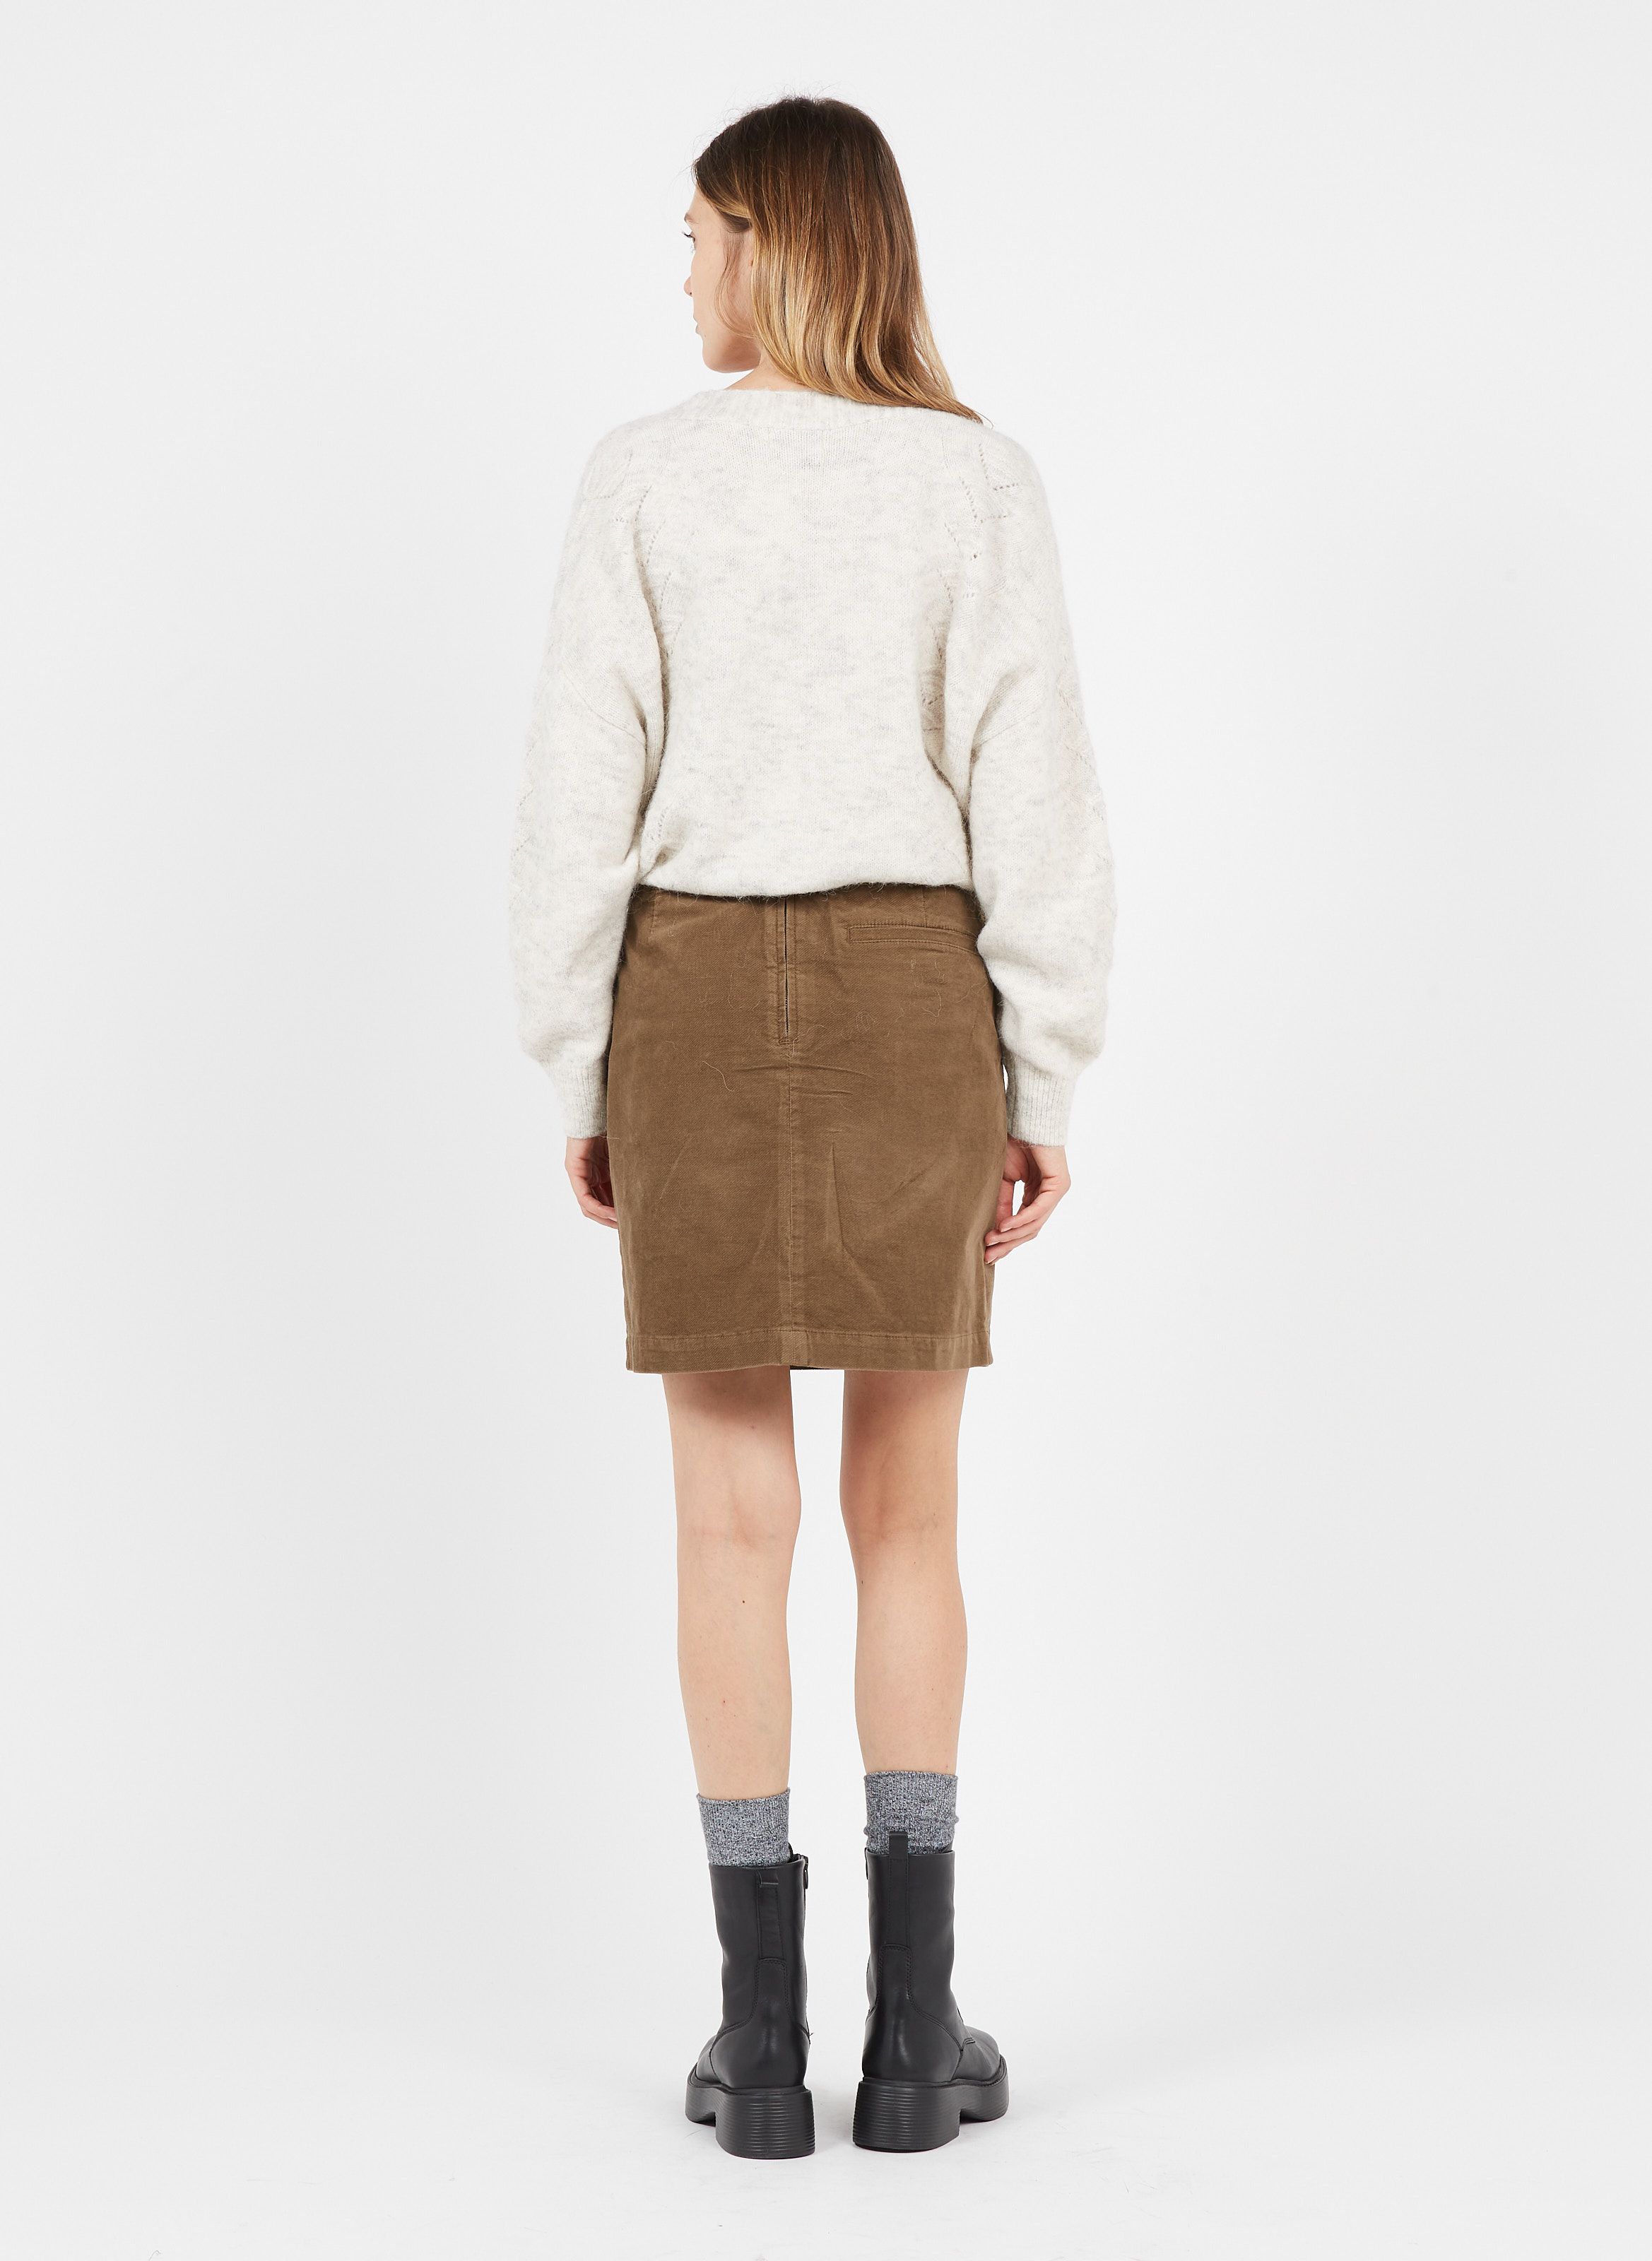 velvet skirt brown